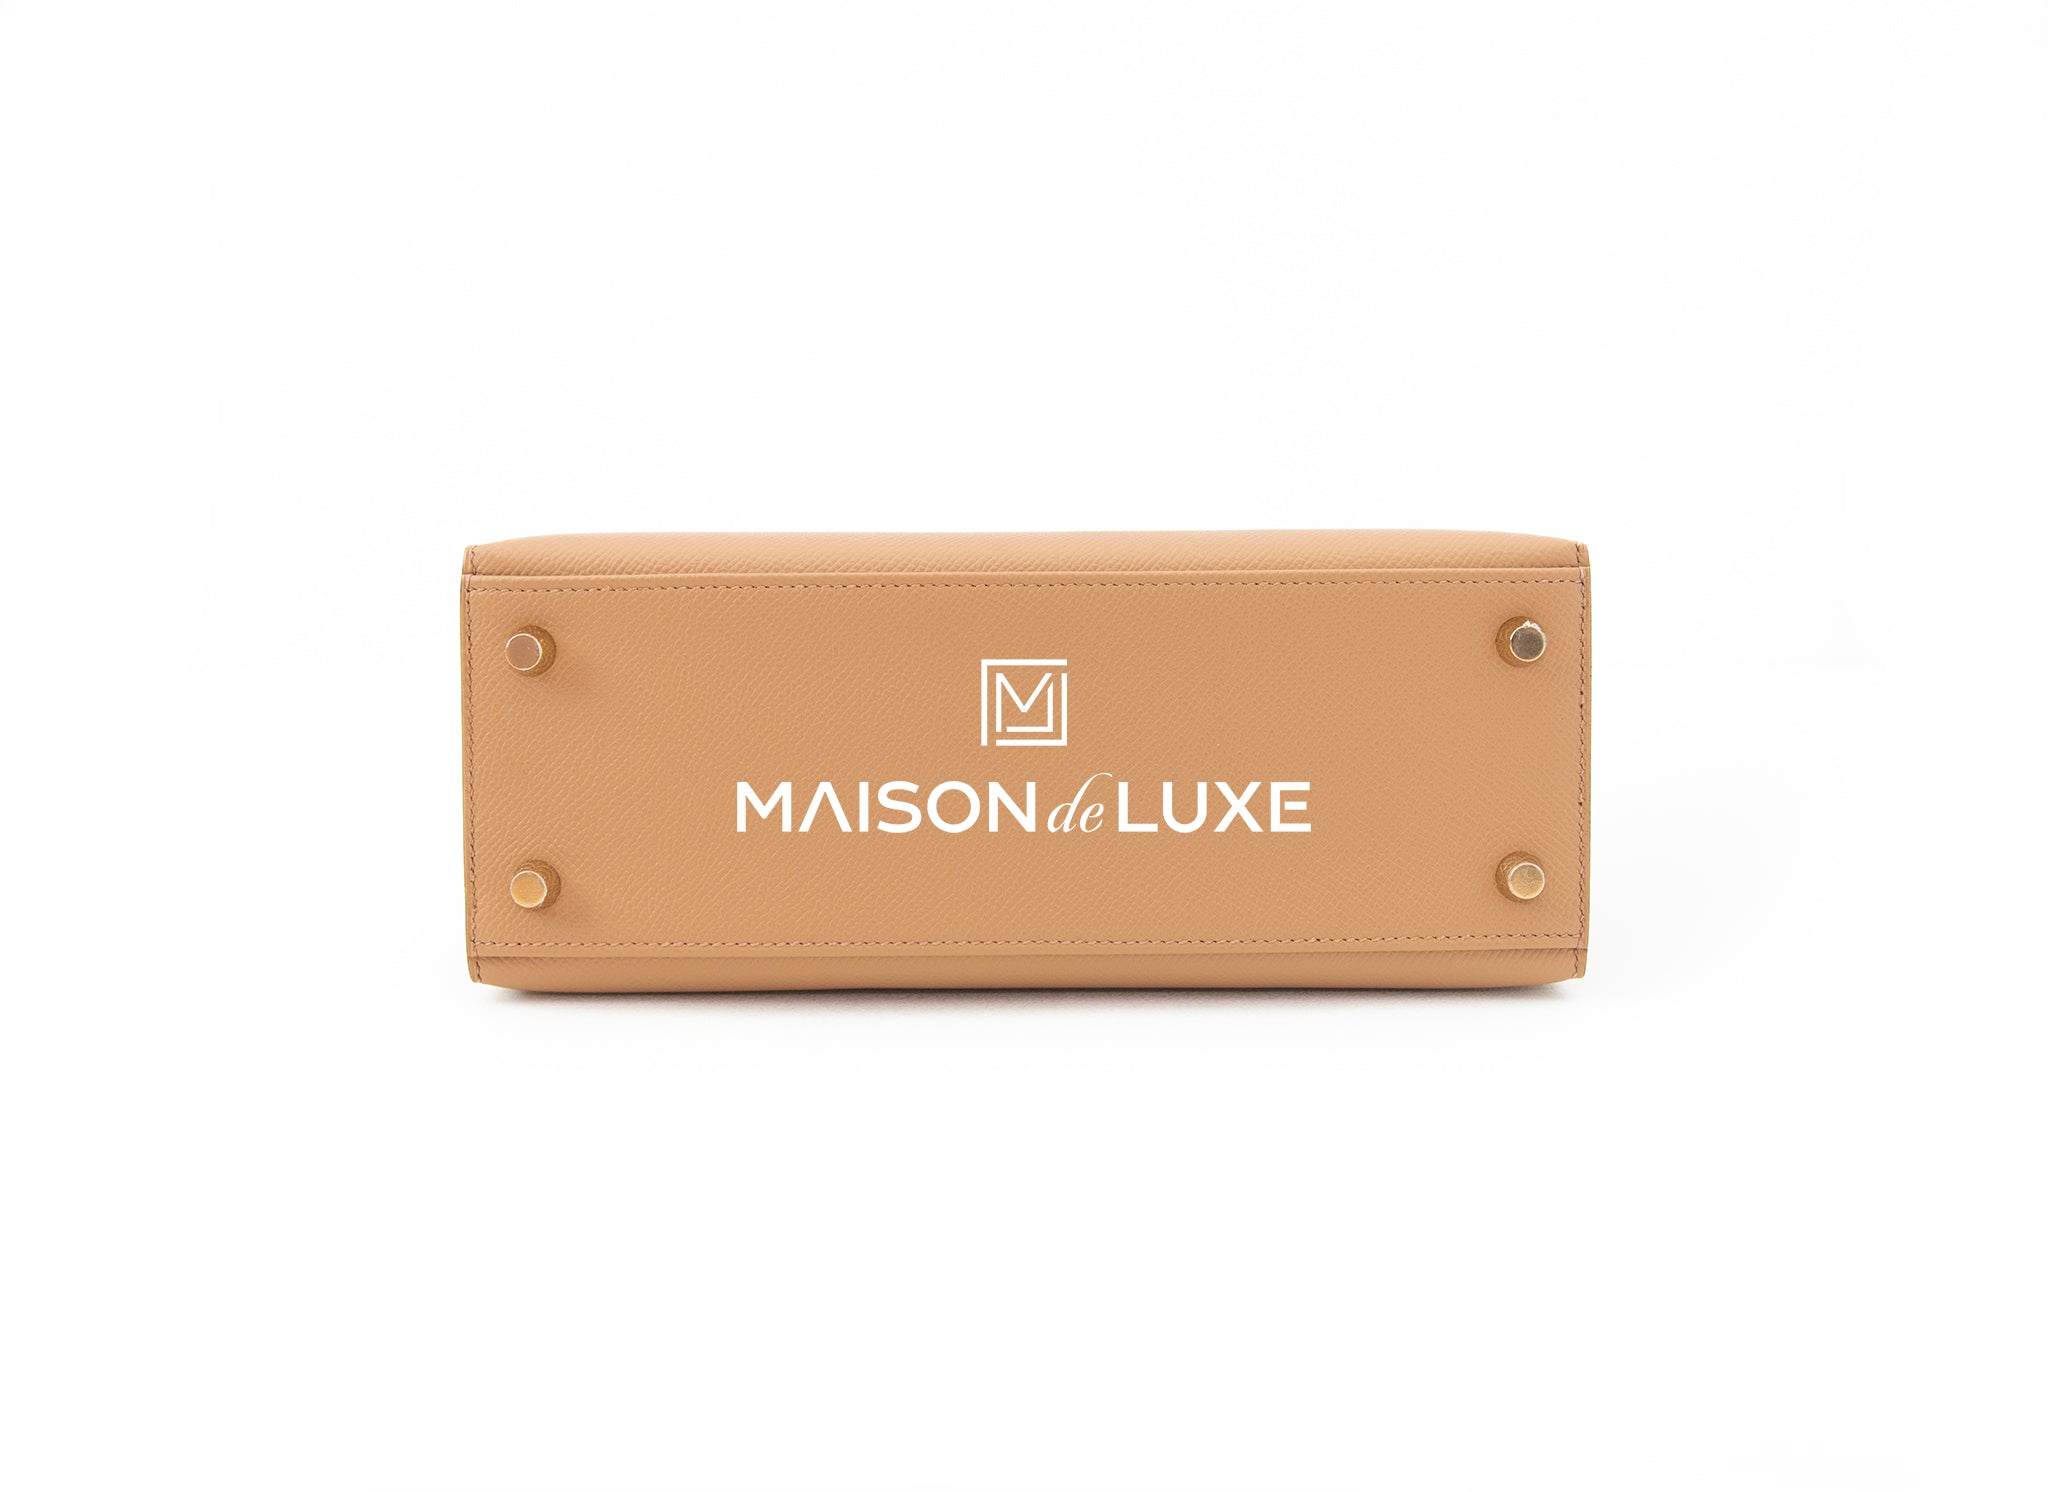 Luxury Maison Ltd. - New 0m chai Epsom kelly 25 ghw #kelly25 #hermeschai